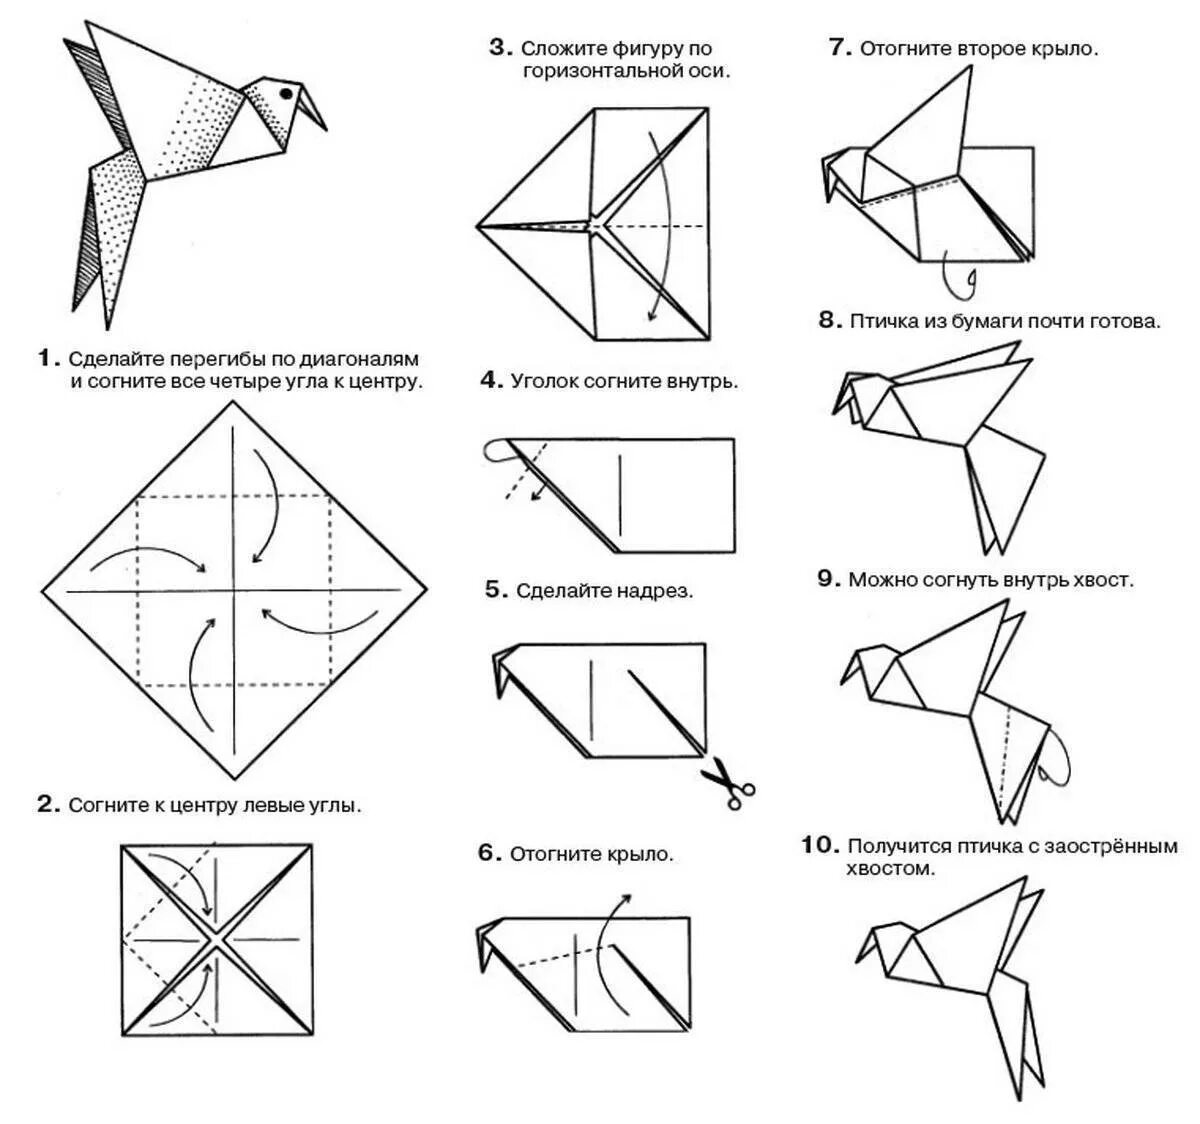 Как собирать оригами. Птичка из бумаги схема складывания пошагово. Птица оригами из бумаги простая схема для детей. Оригами из бумаги пошагово 3 класс. Оригами из бумаги для детей инструкция пошагово.